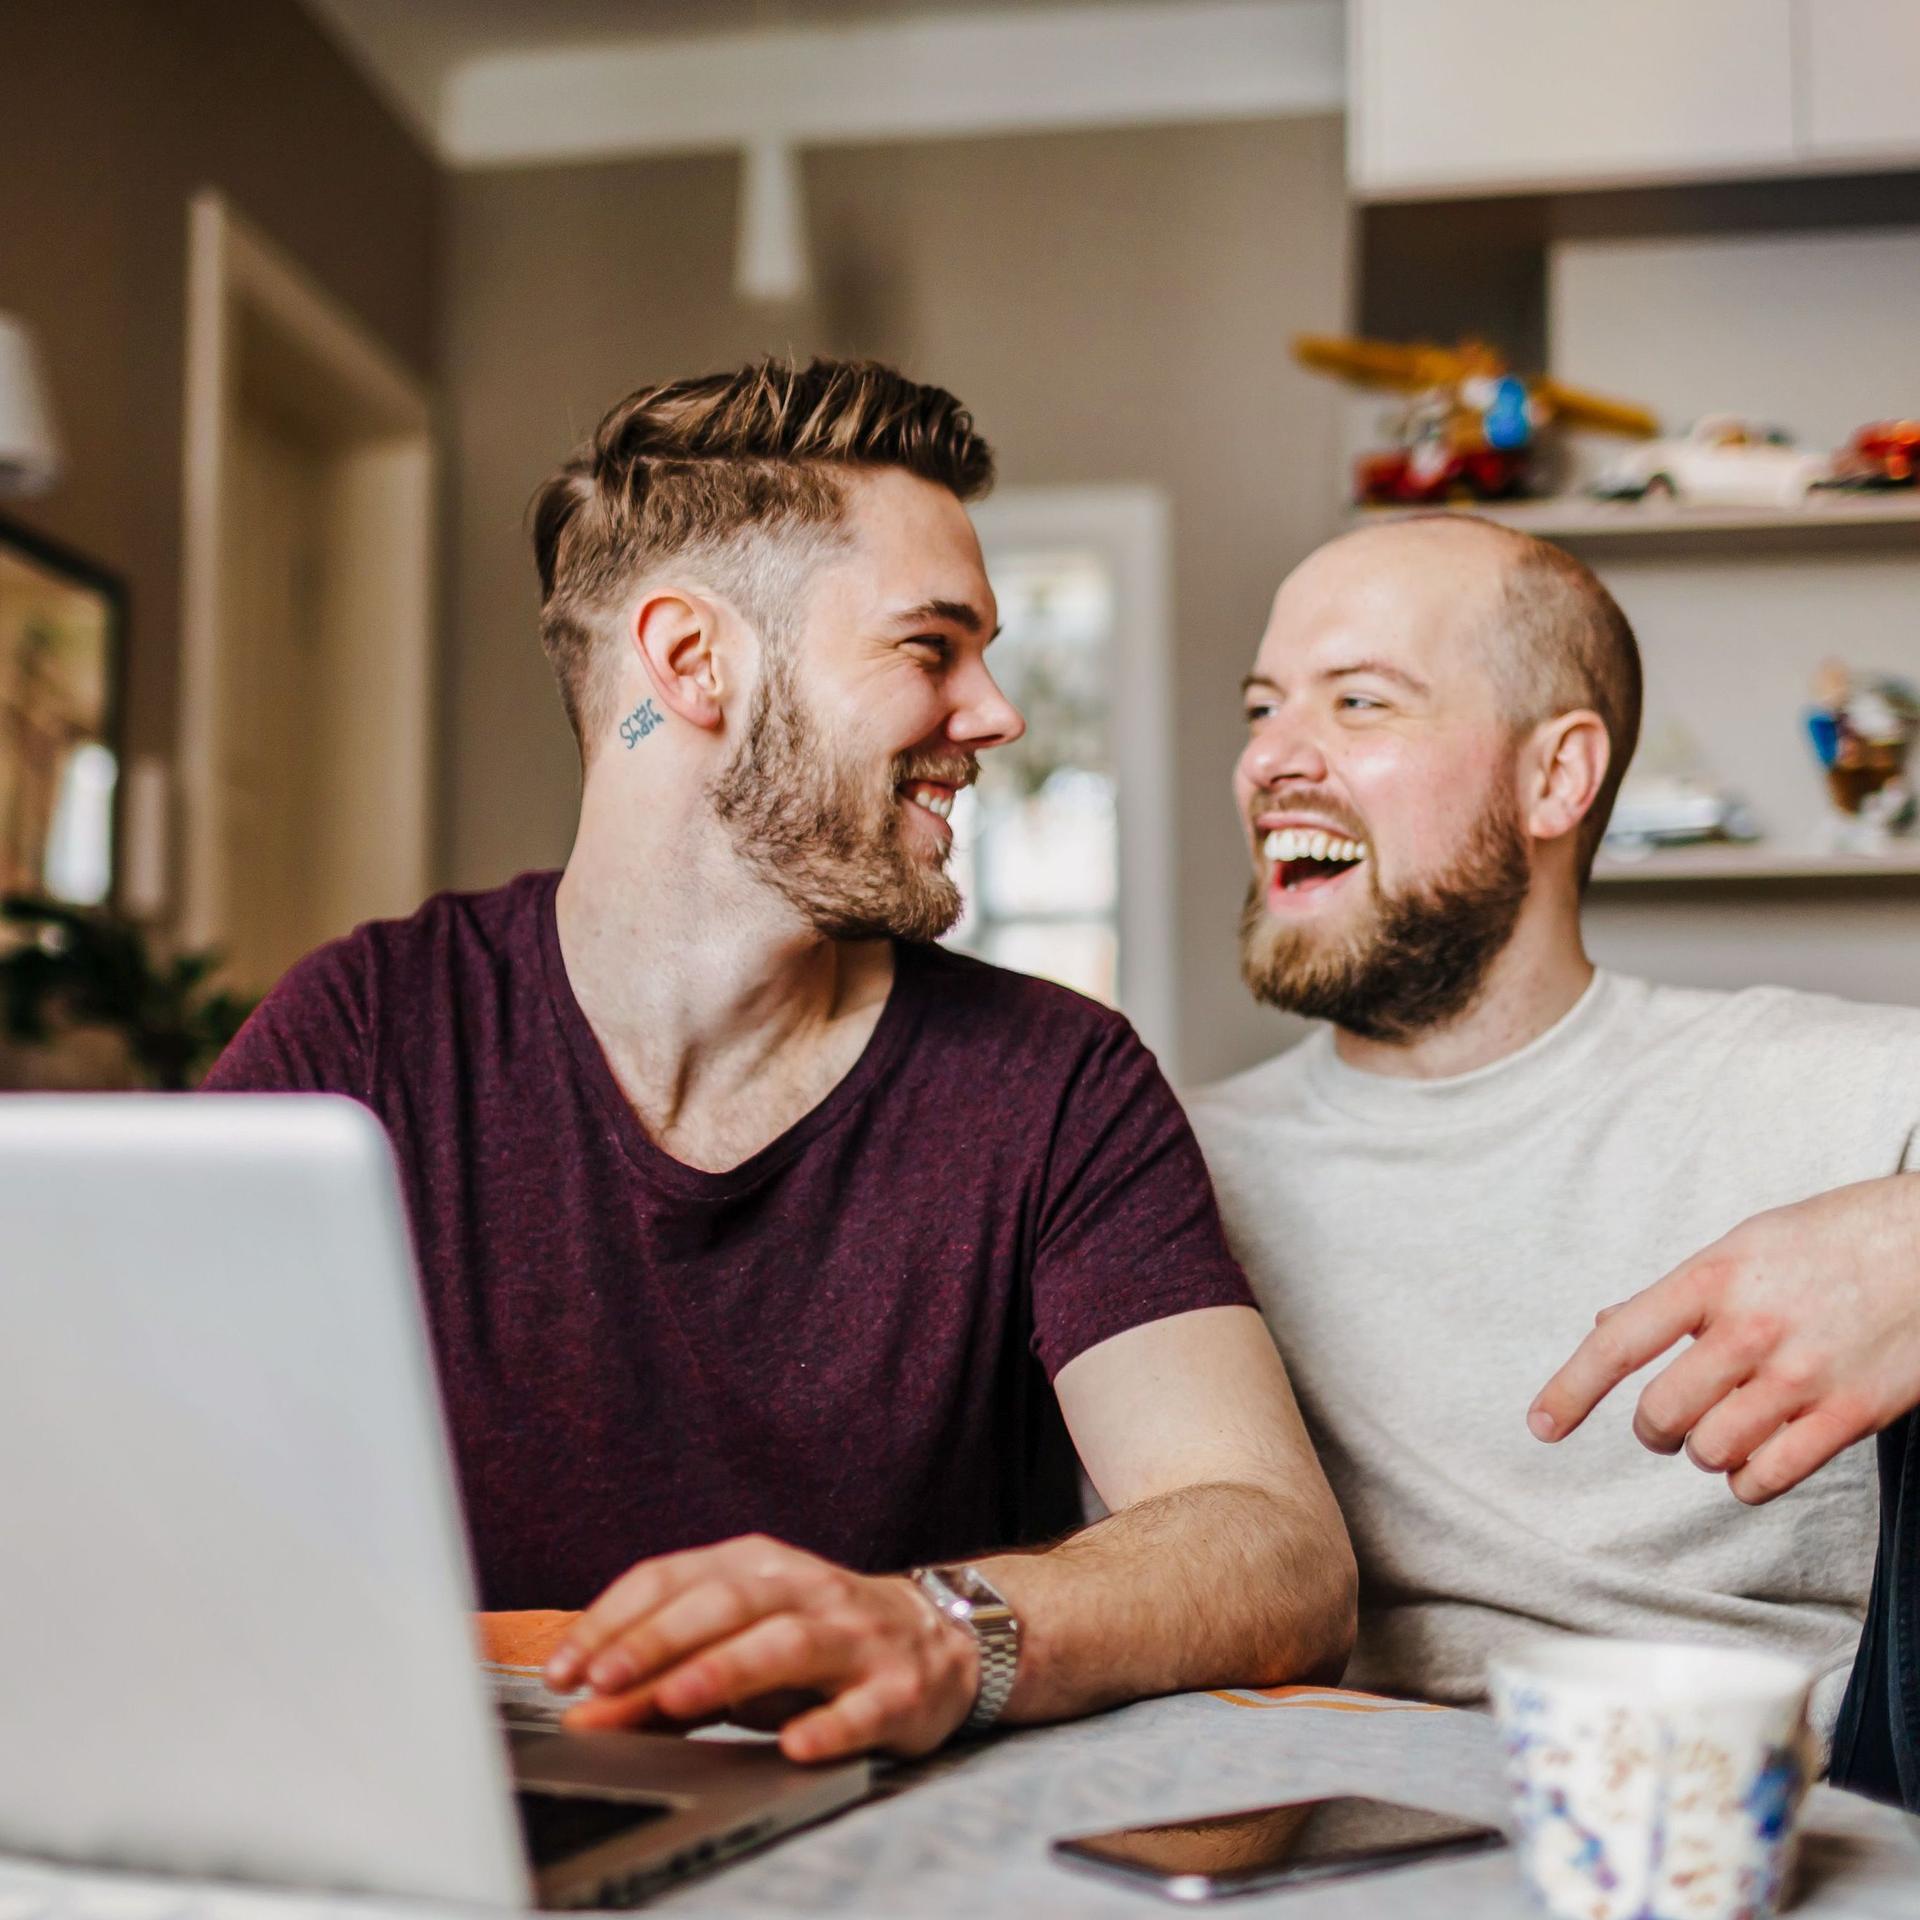 Zwei junge Männer sitzen vor einem Laptop in einer Wohnung. Sie schauen sich an und lachen ausgelassen.